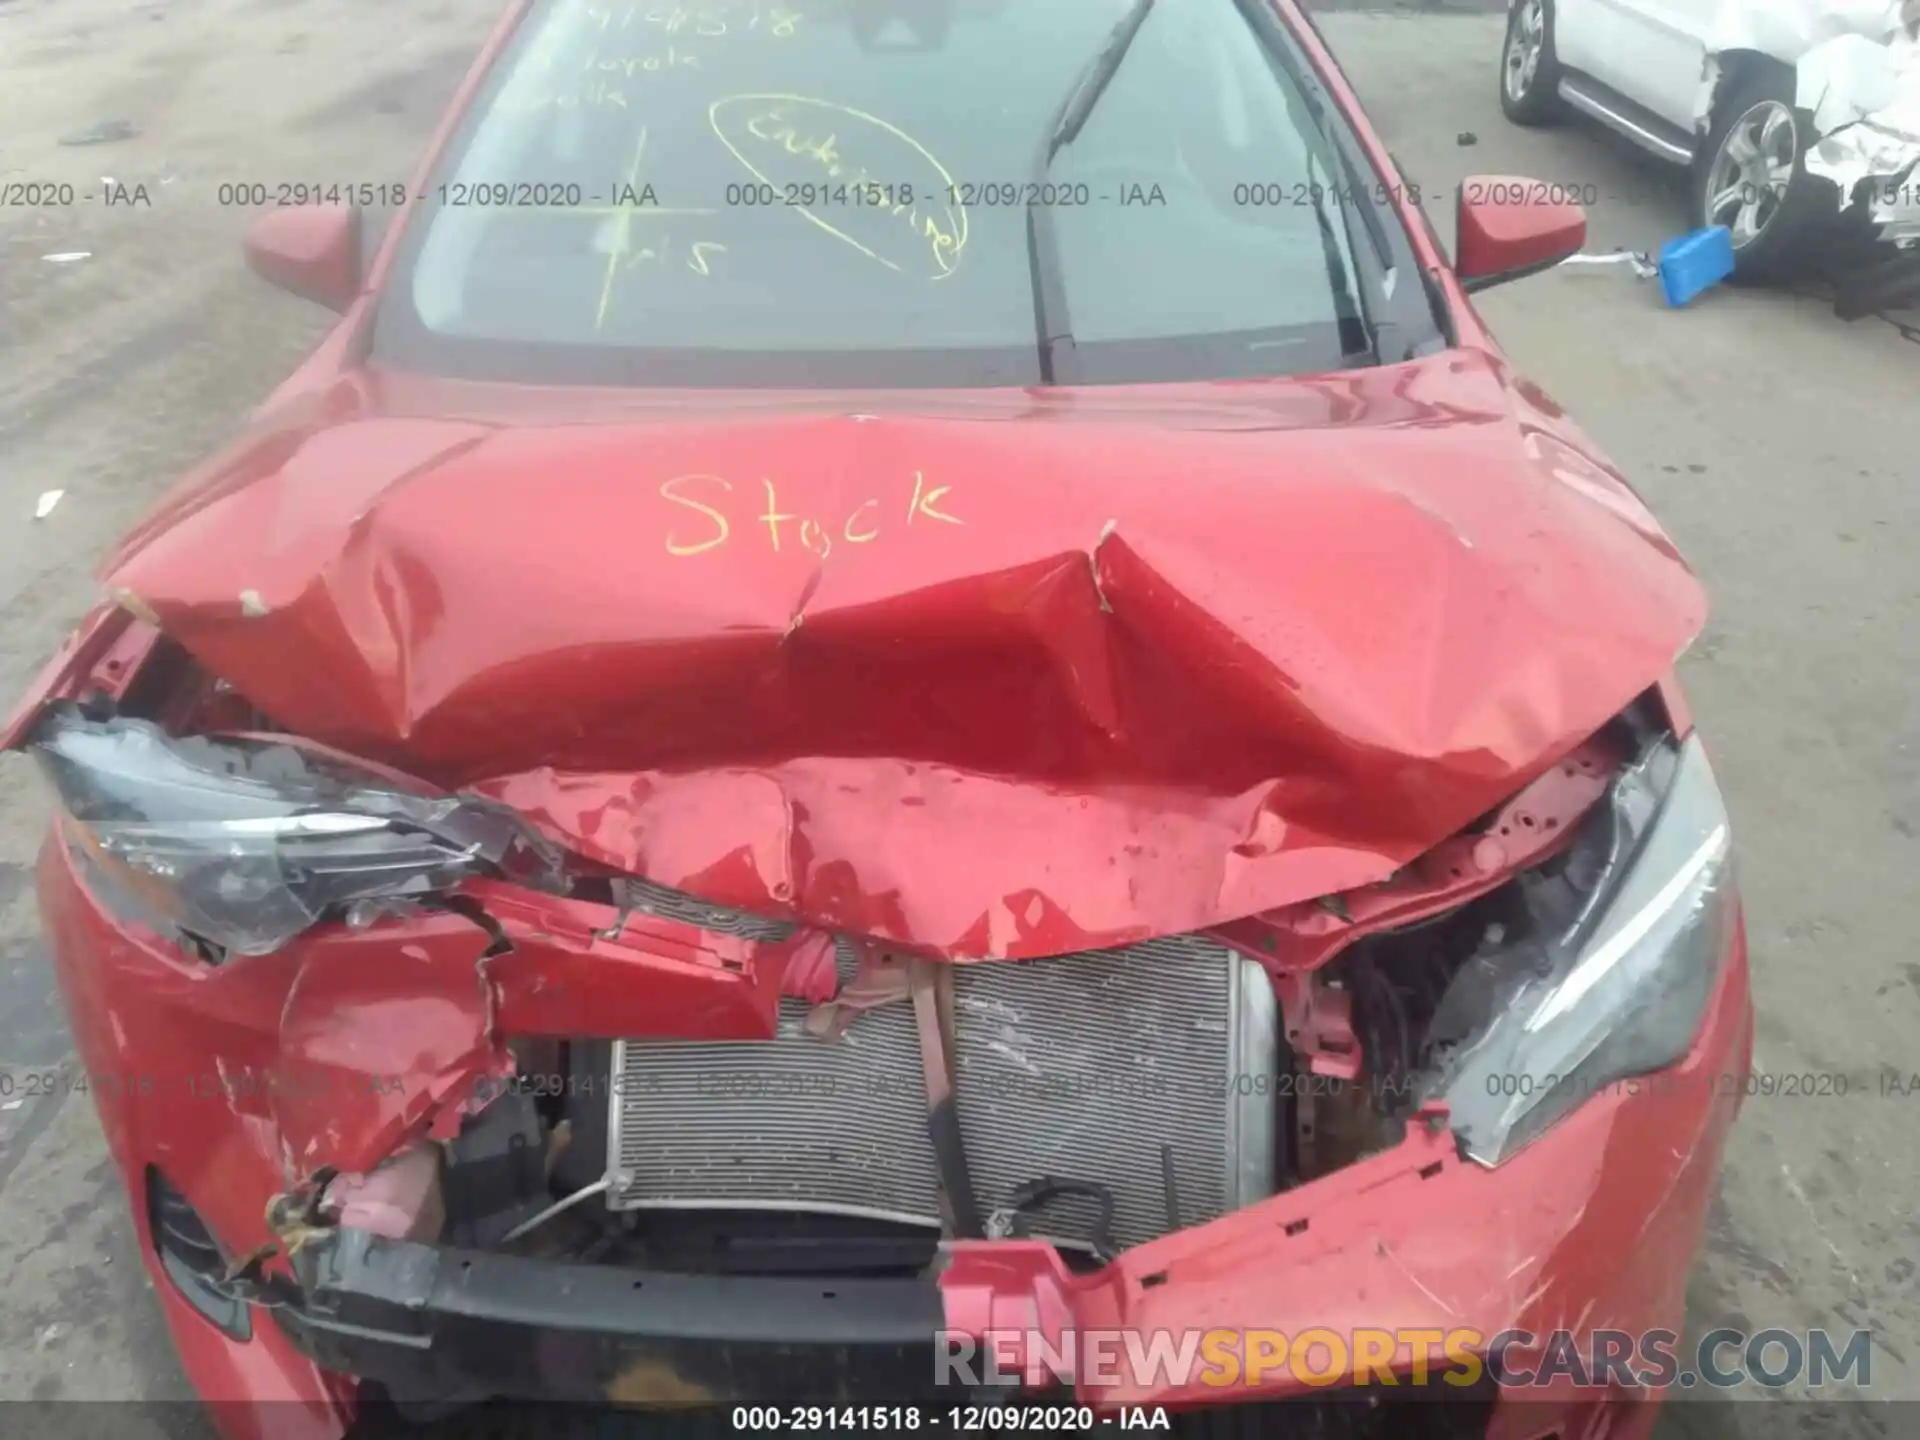 10 Photograph of a damaged car 5YFBURHE0KP907292 TOYOTA COROLLA 2019